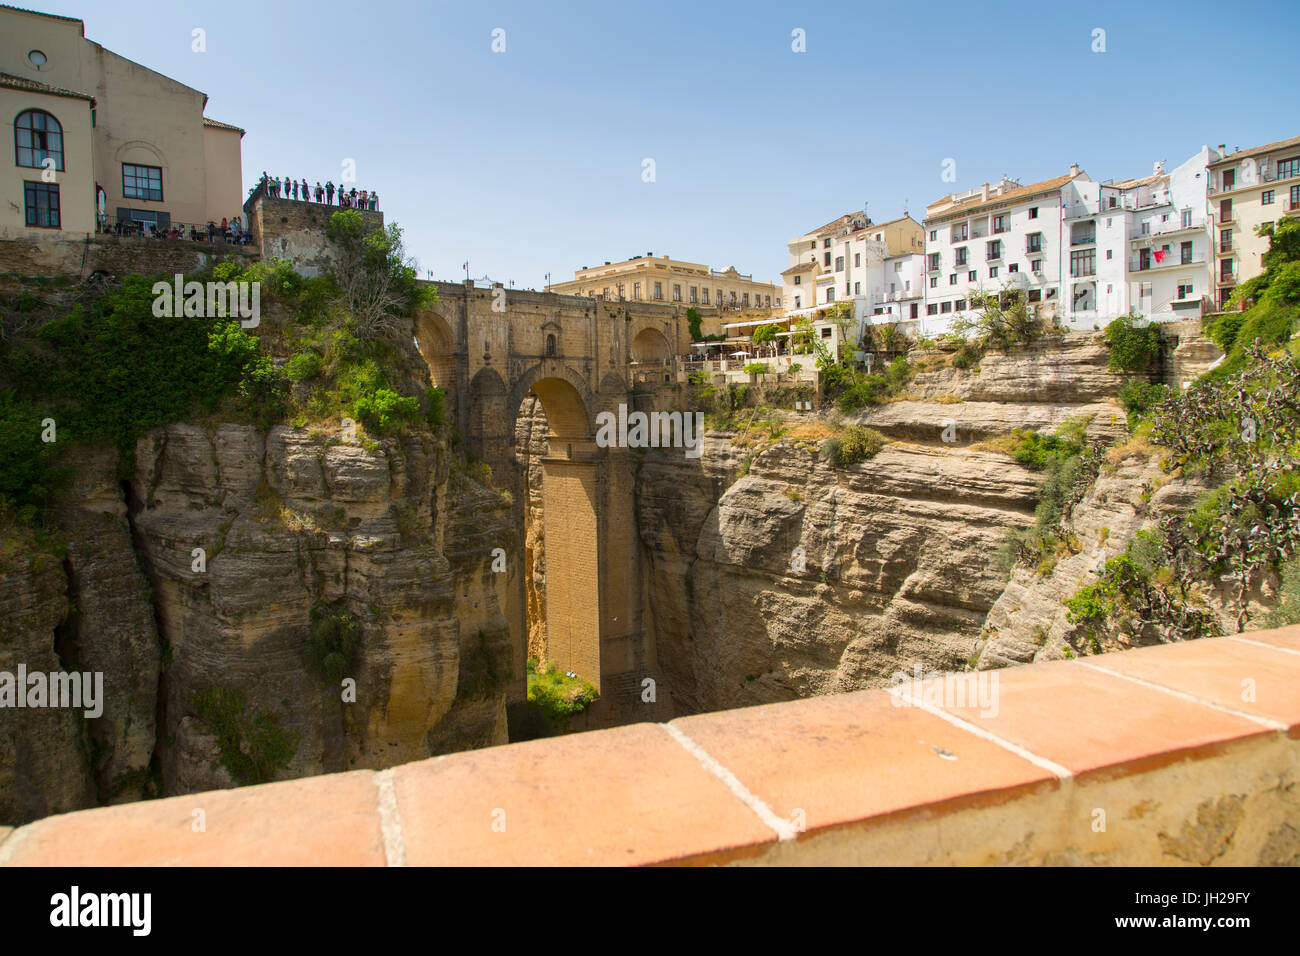 Vista de Ronda y el Puente Nuevo desde los jardines de Cuenca, Ronda, Andalucia, España, Europa Foto de stock